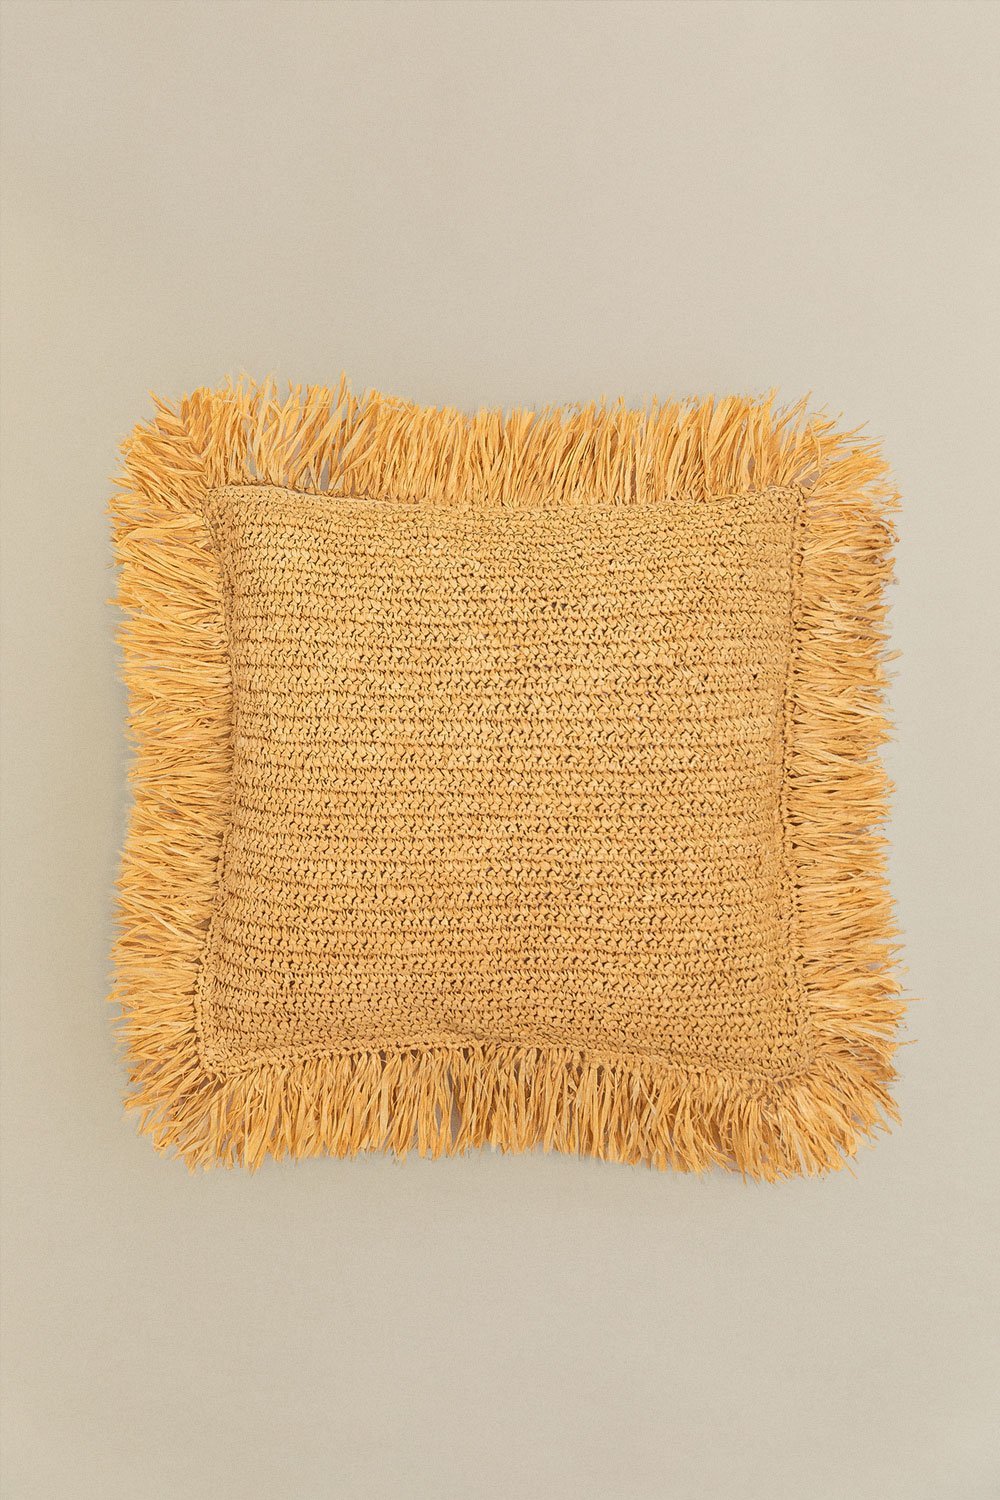 Almofada Quadrada de Rafia Trançada (45x45 cm) Doncka, imagem de galeria 1